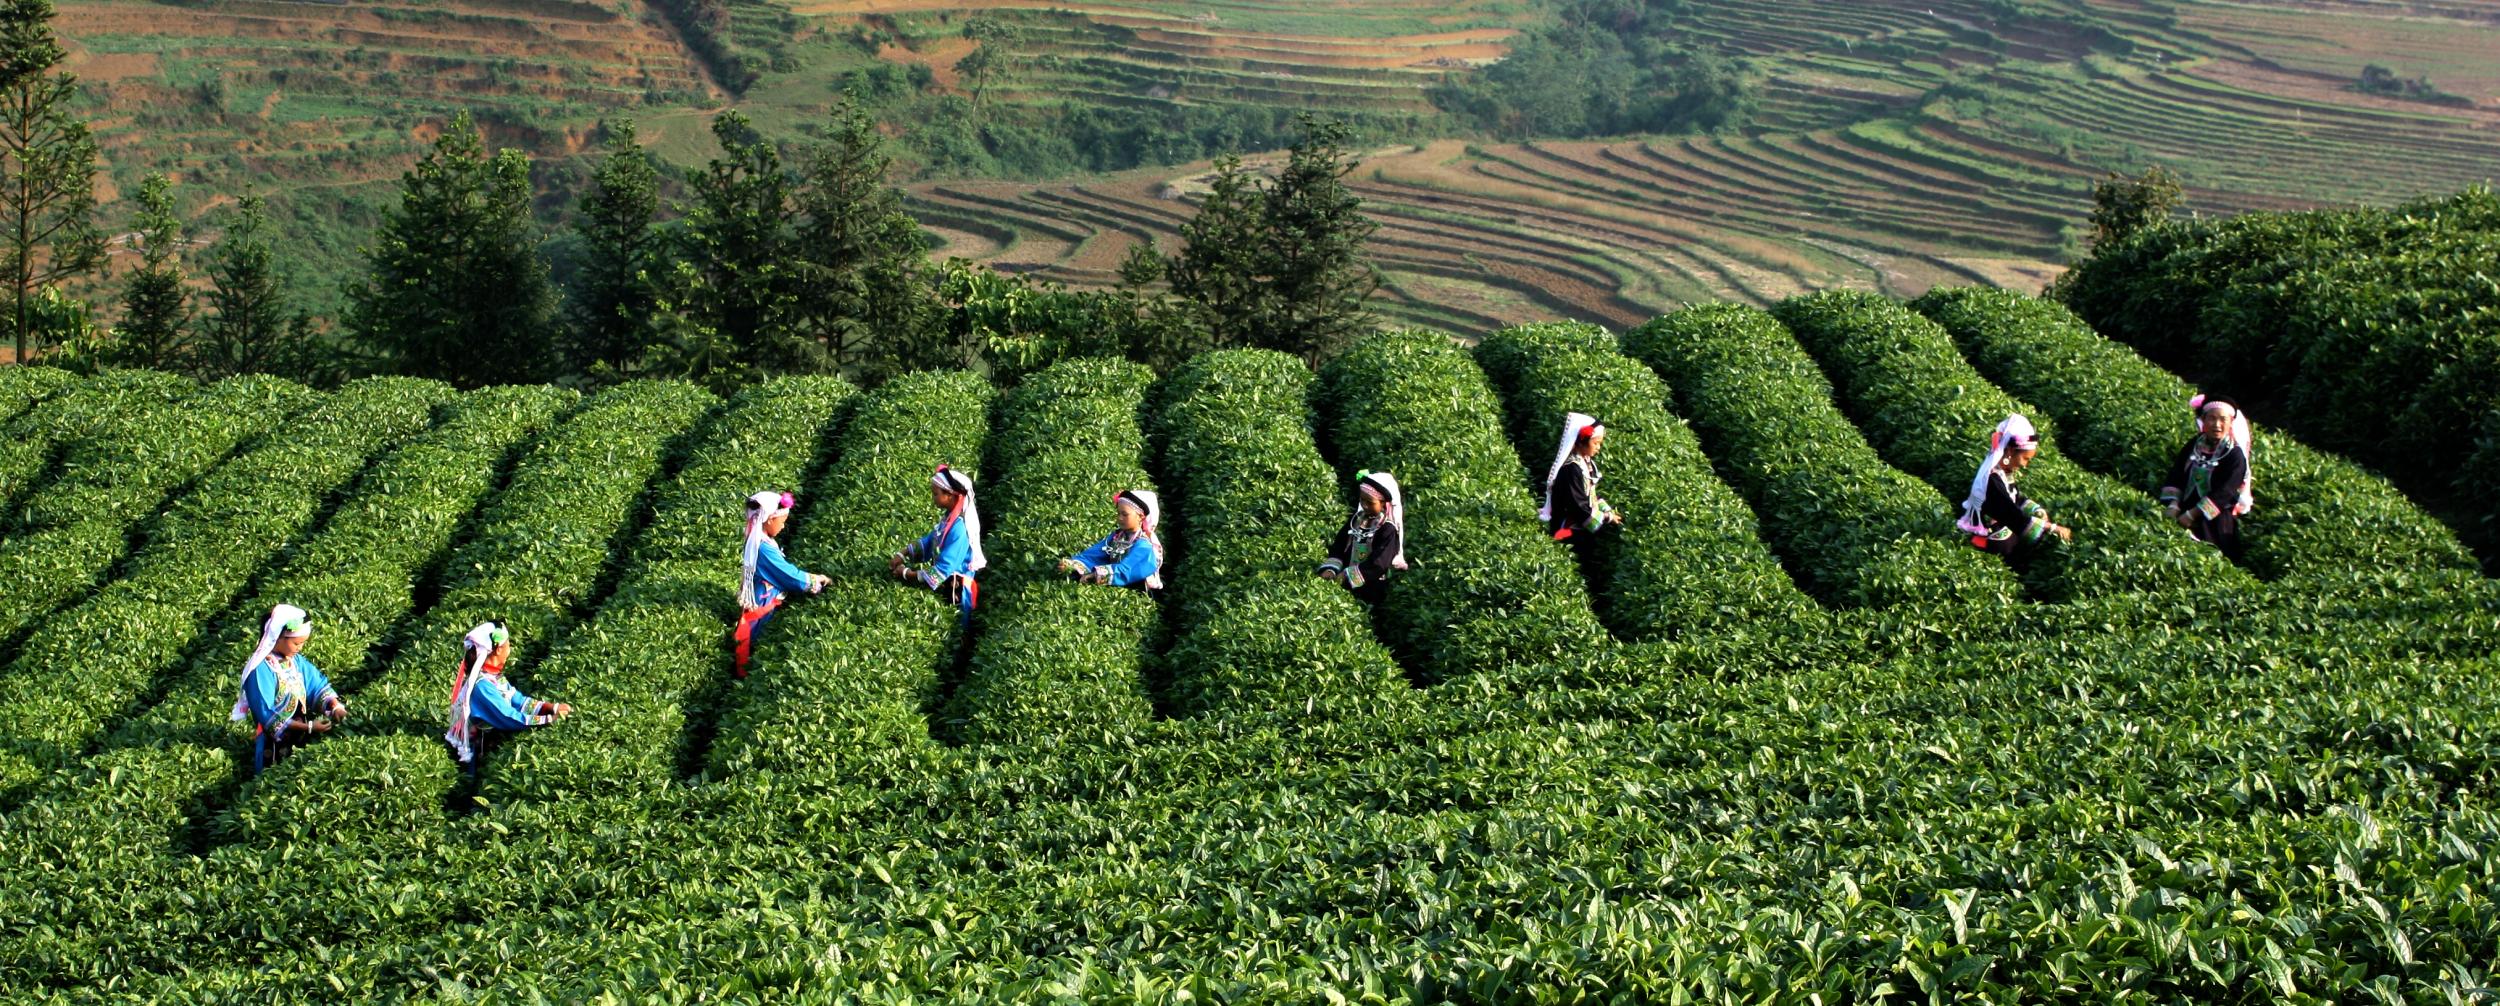 HelloYoung1000g Yunnan Pu-erh Tea Gift Craft Pu Er Tea Gourd Decoration Puer Raw Gift Tea